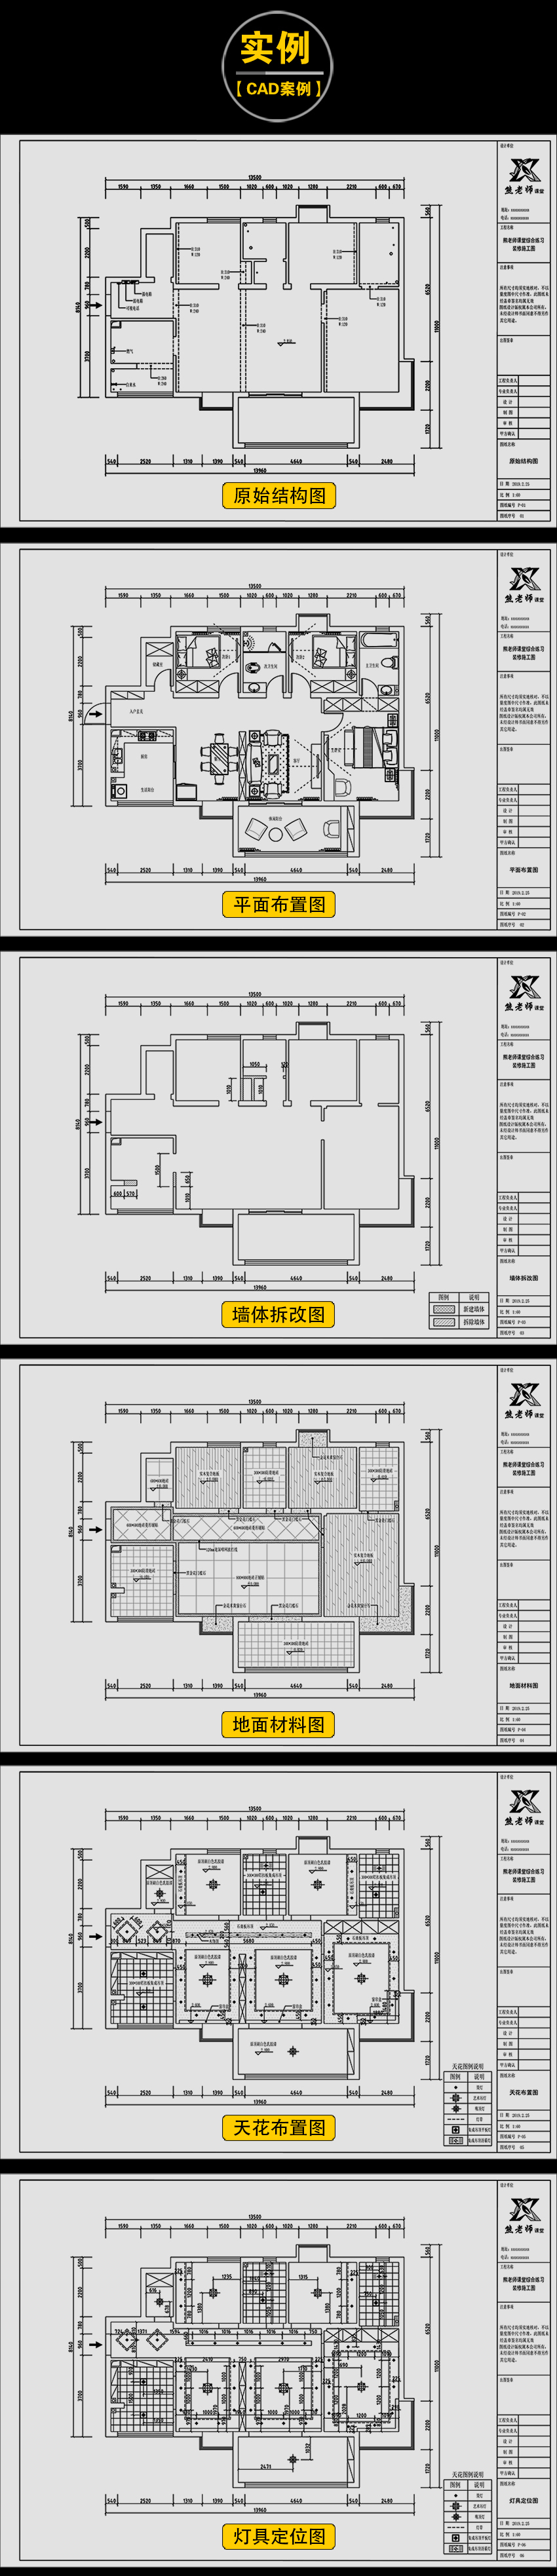 CAD室内设计施工图零基础教程